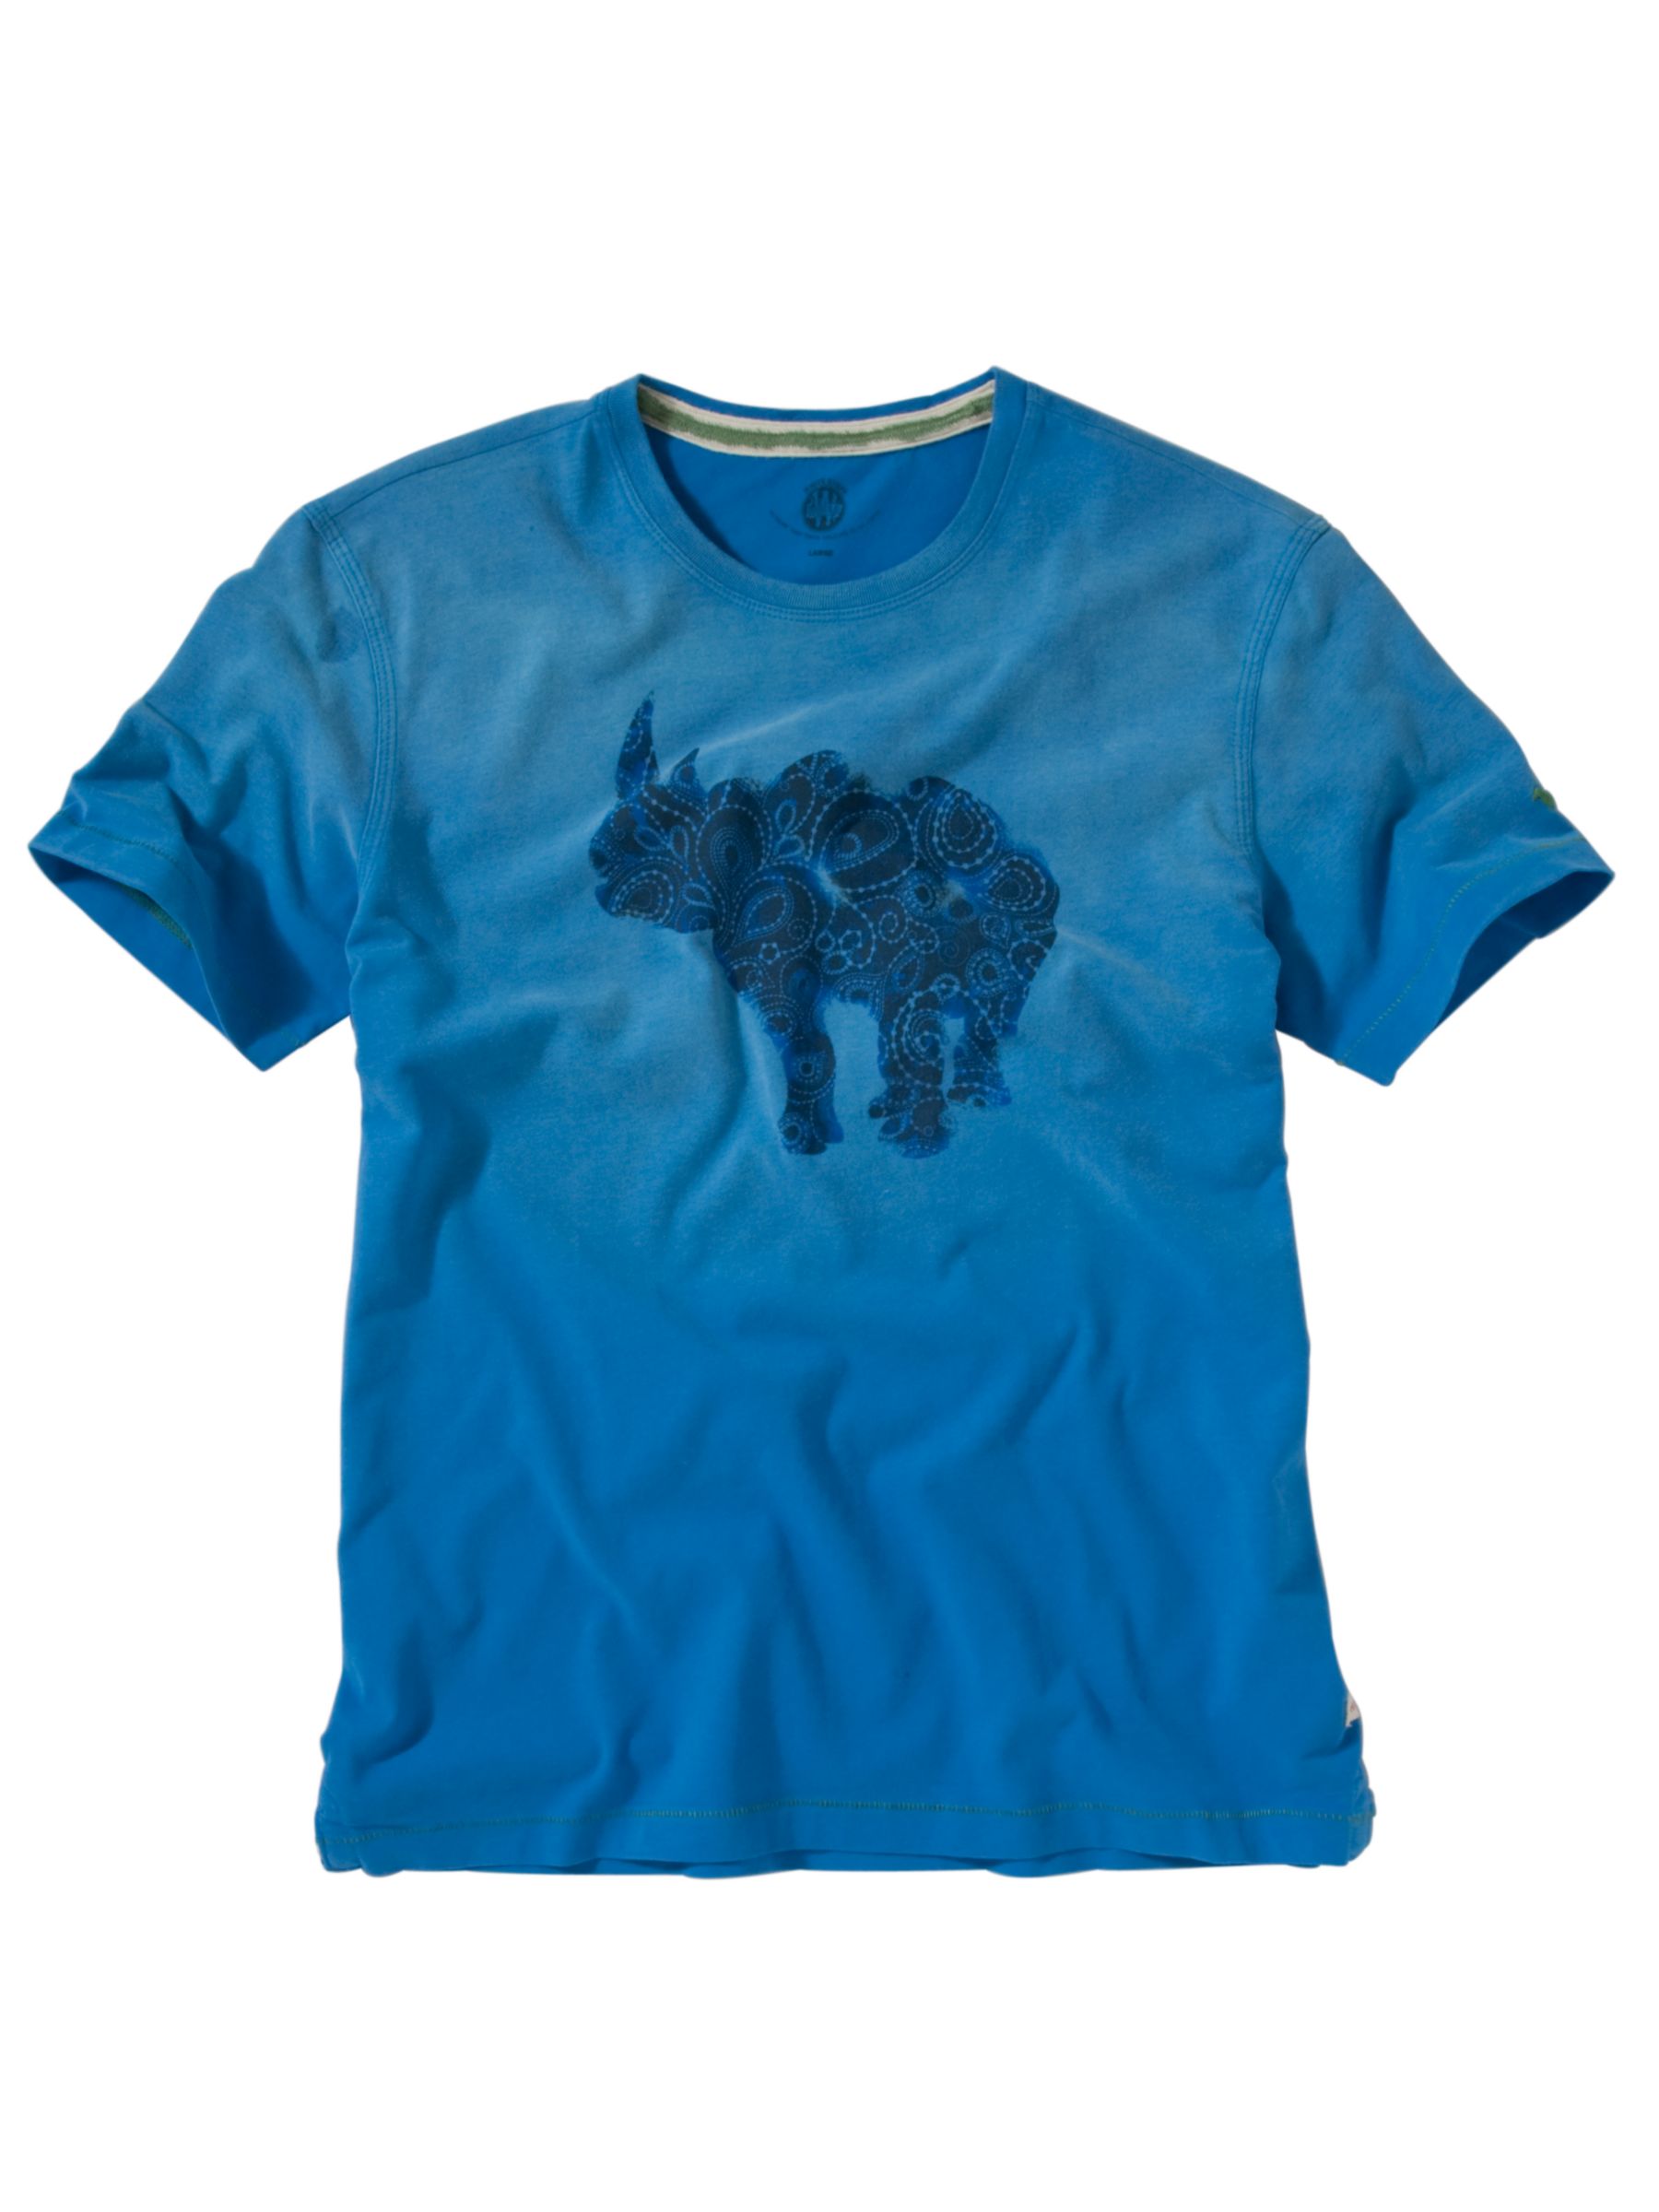 Rhino T-Shirt, Capricorn